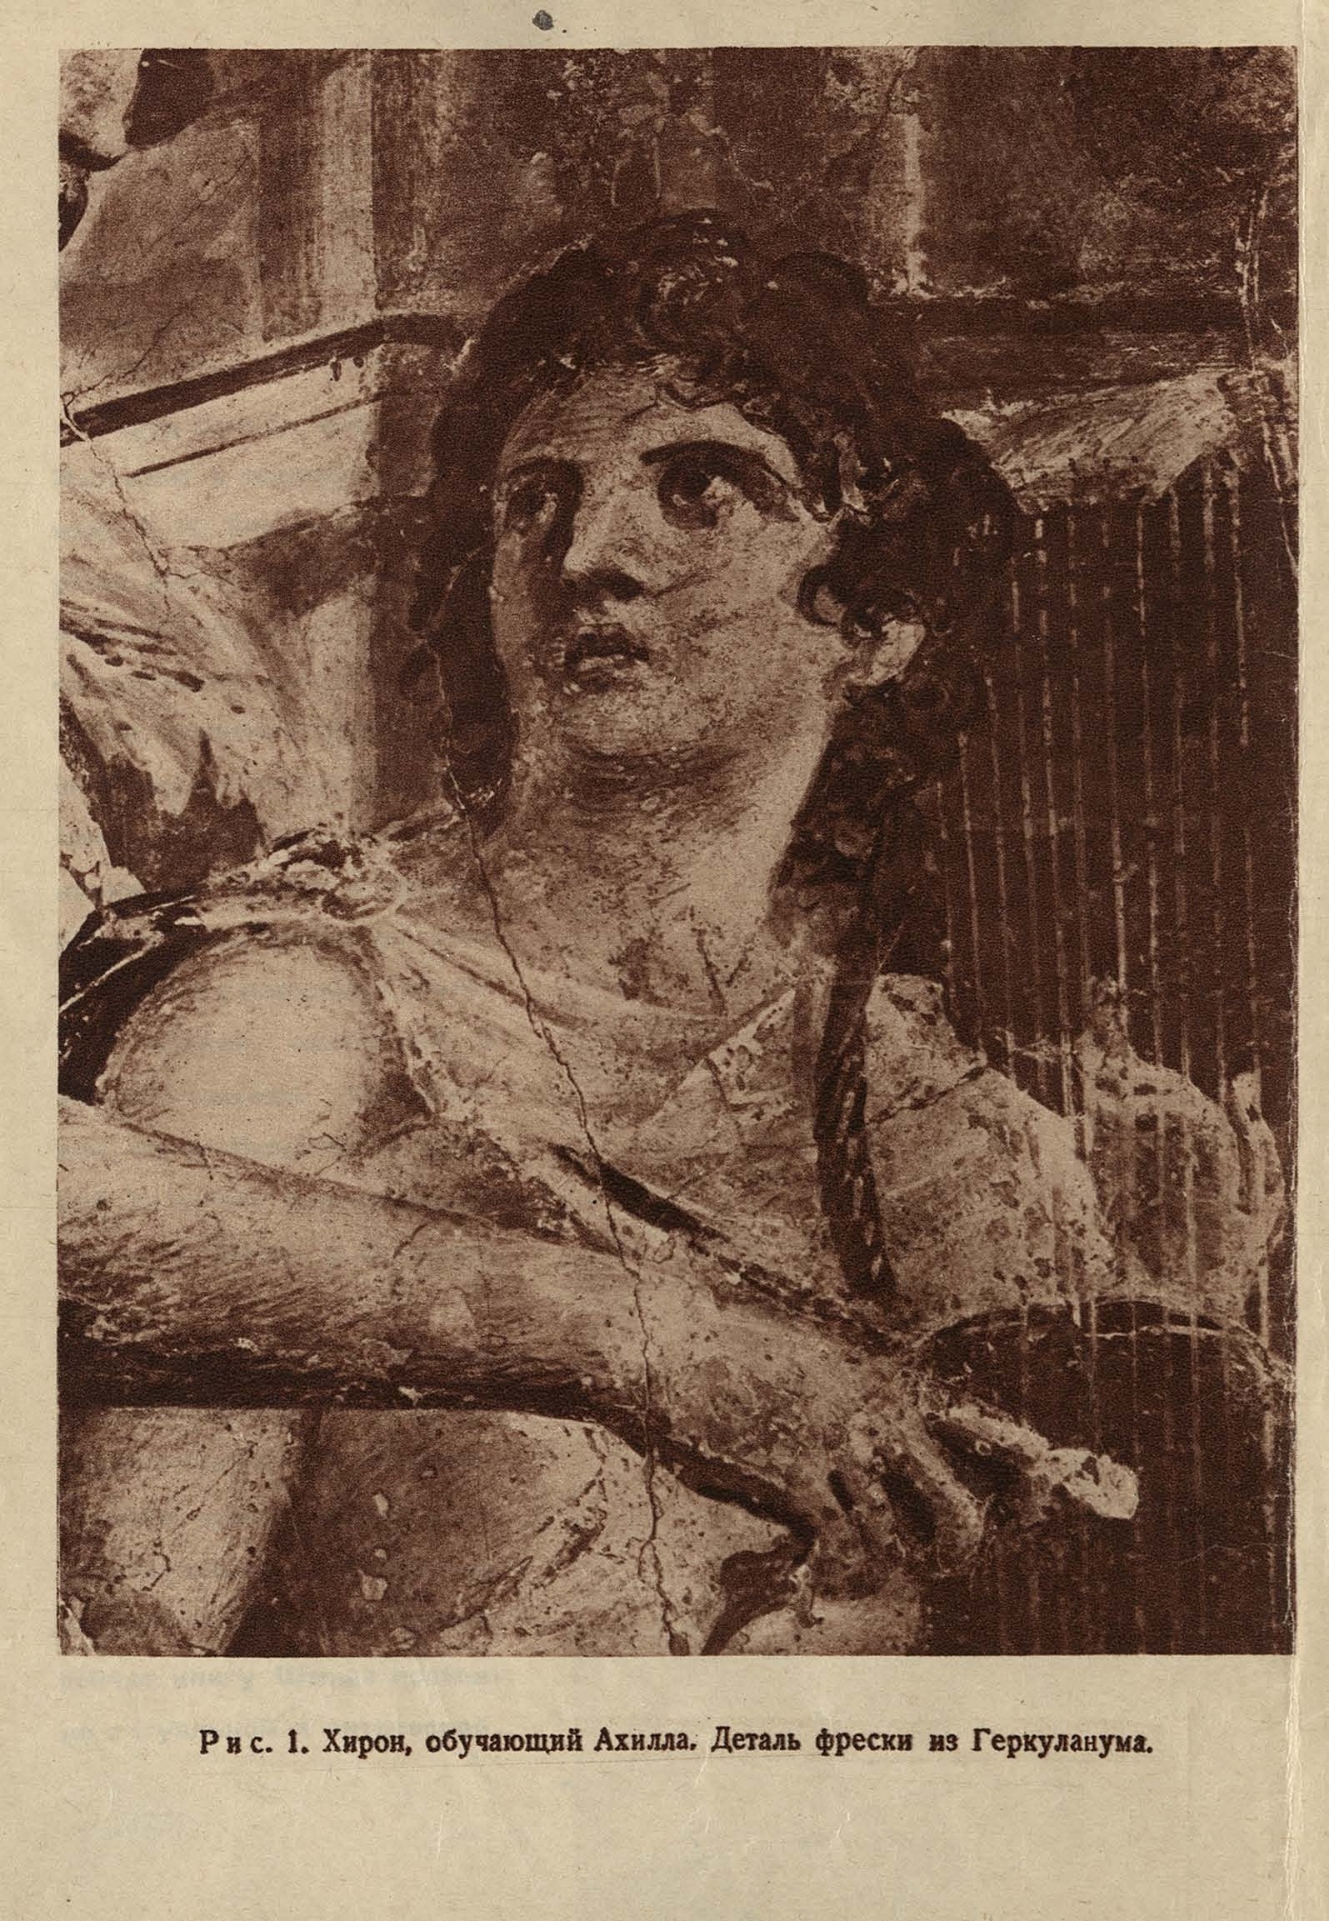 Деталь фрески «Хирон, обучающий Ахилла». Из так называемой «Базилики Геркуланума»